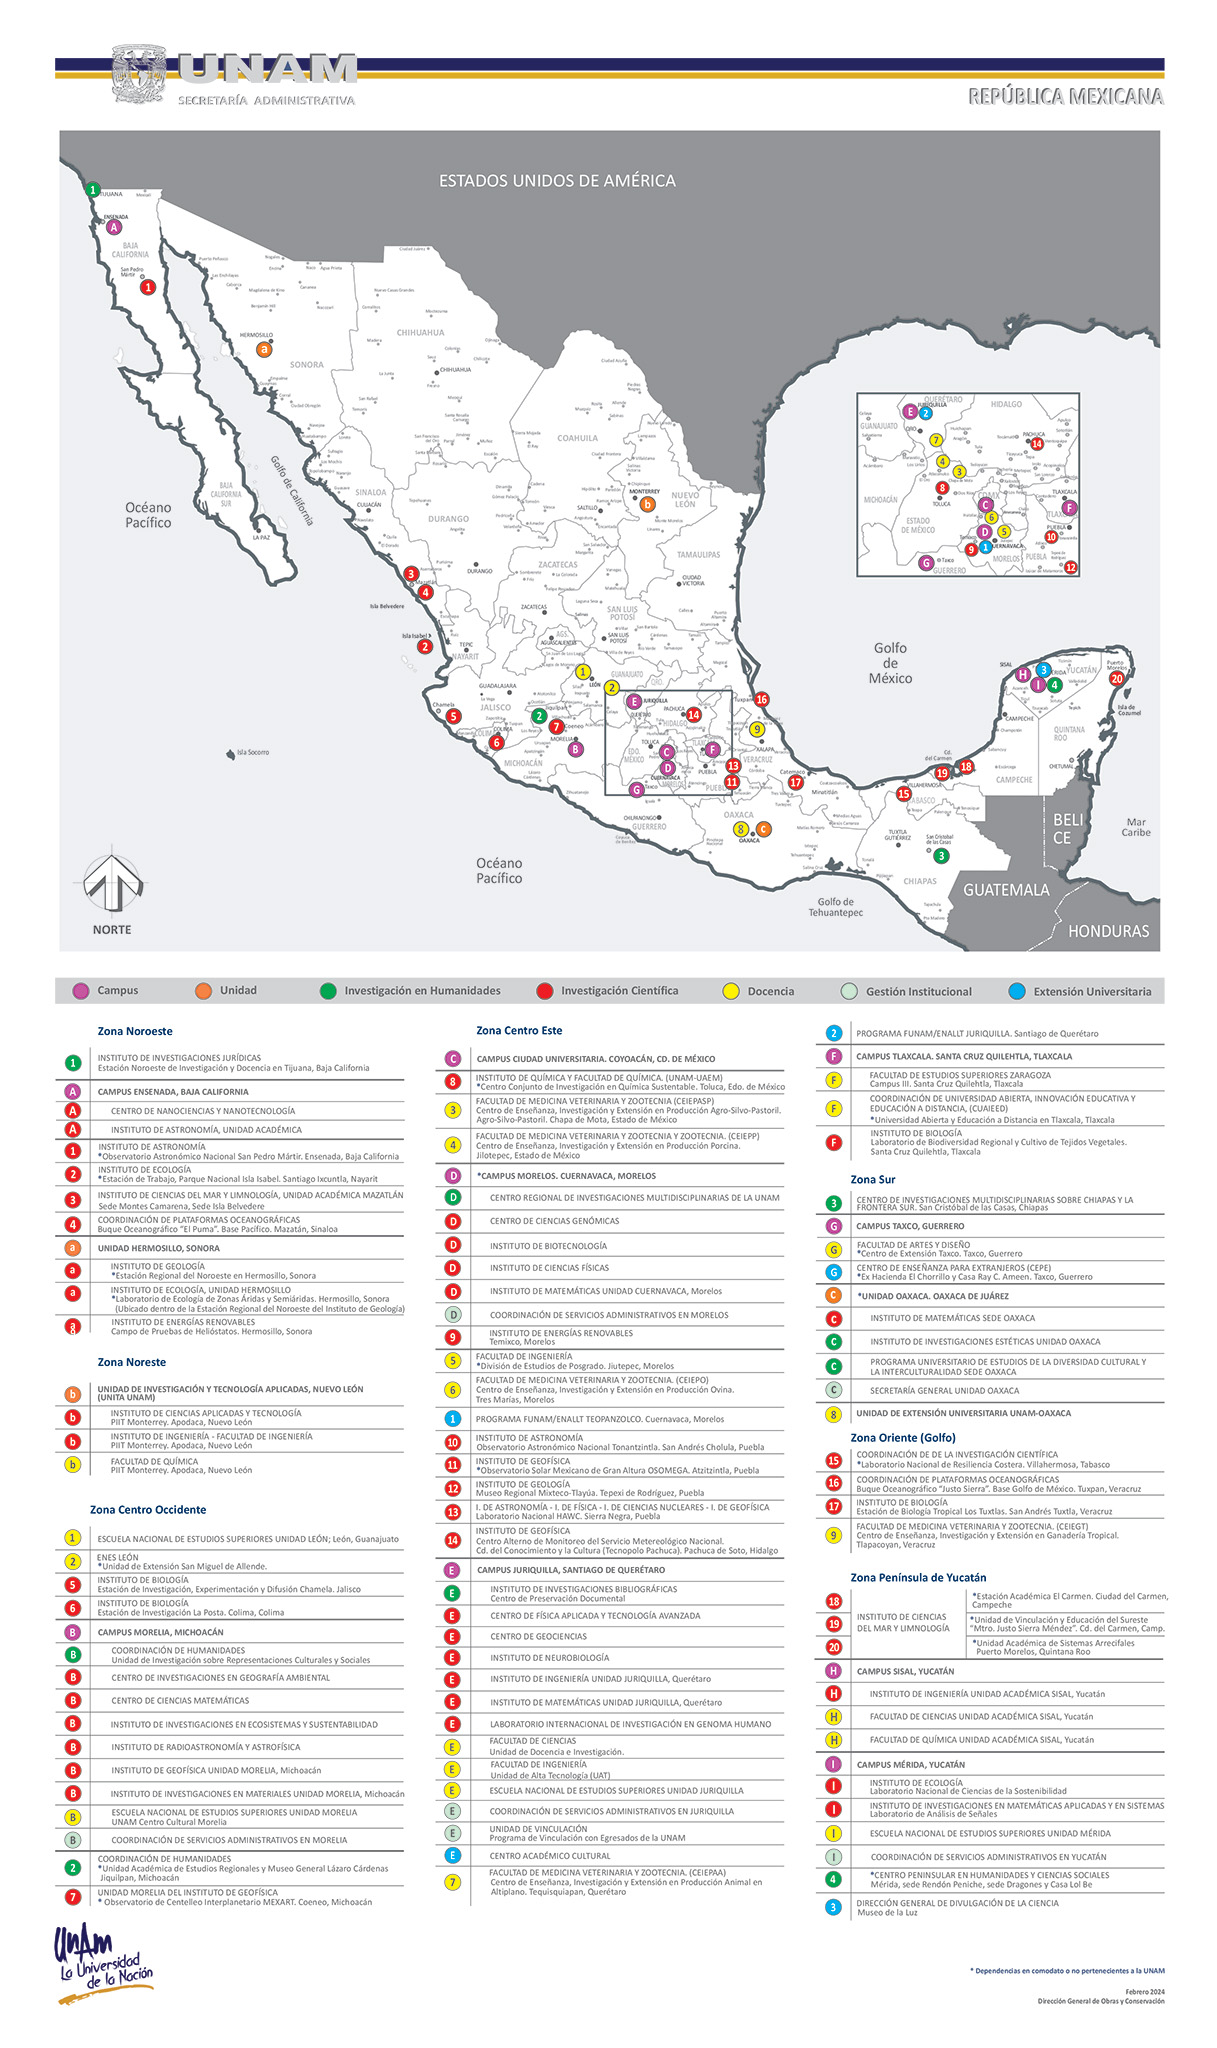 La UNAM en la República Mexicana